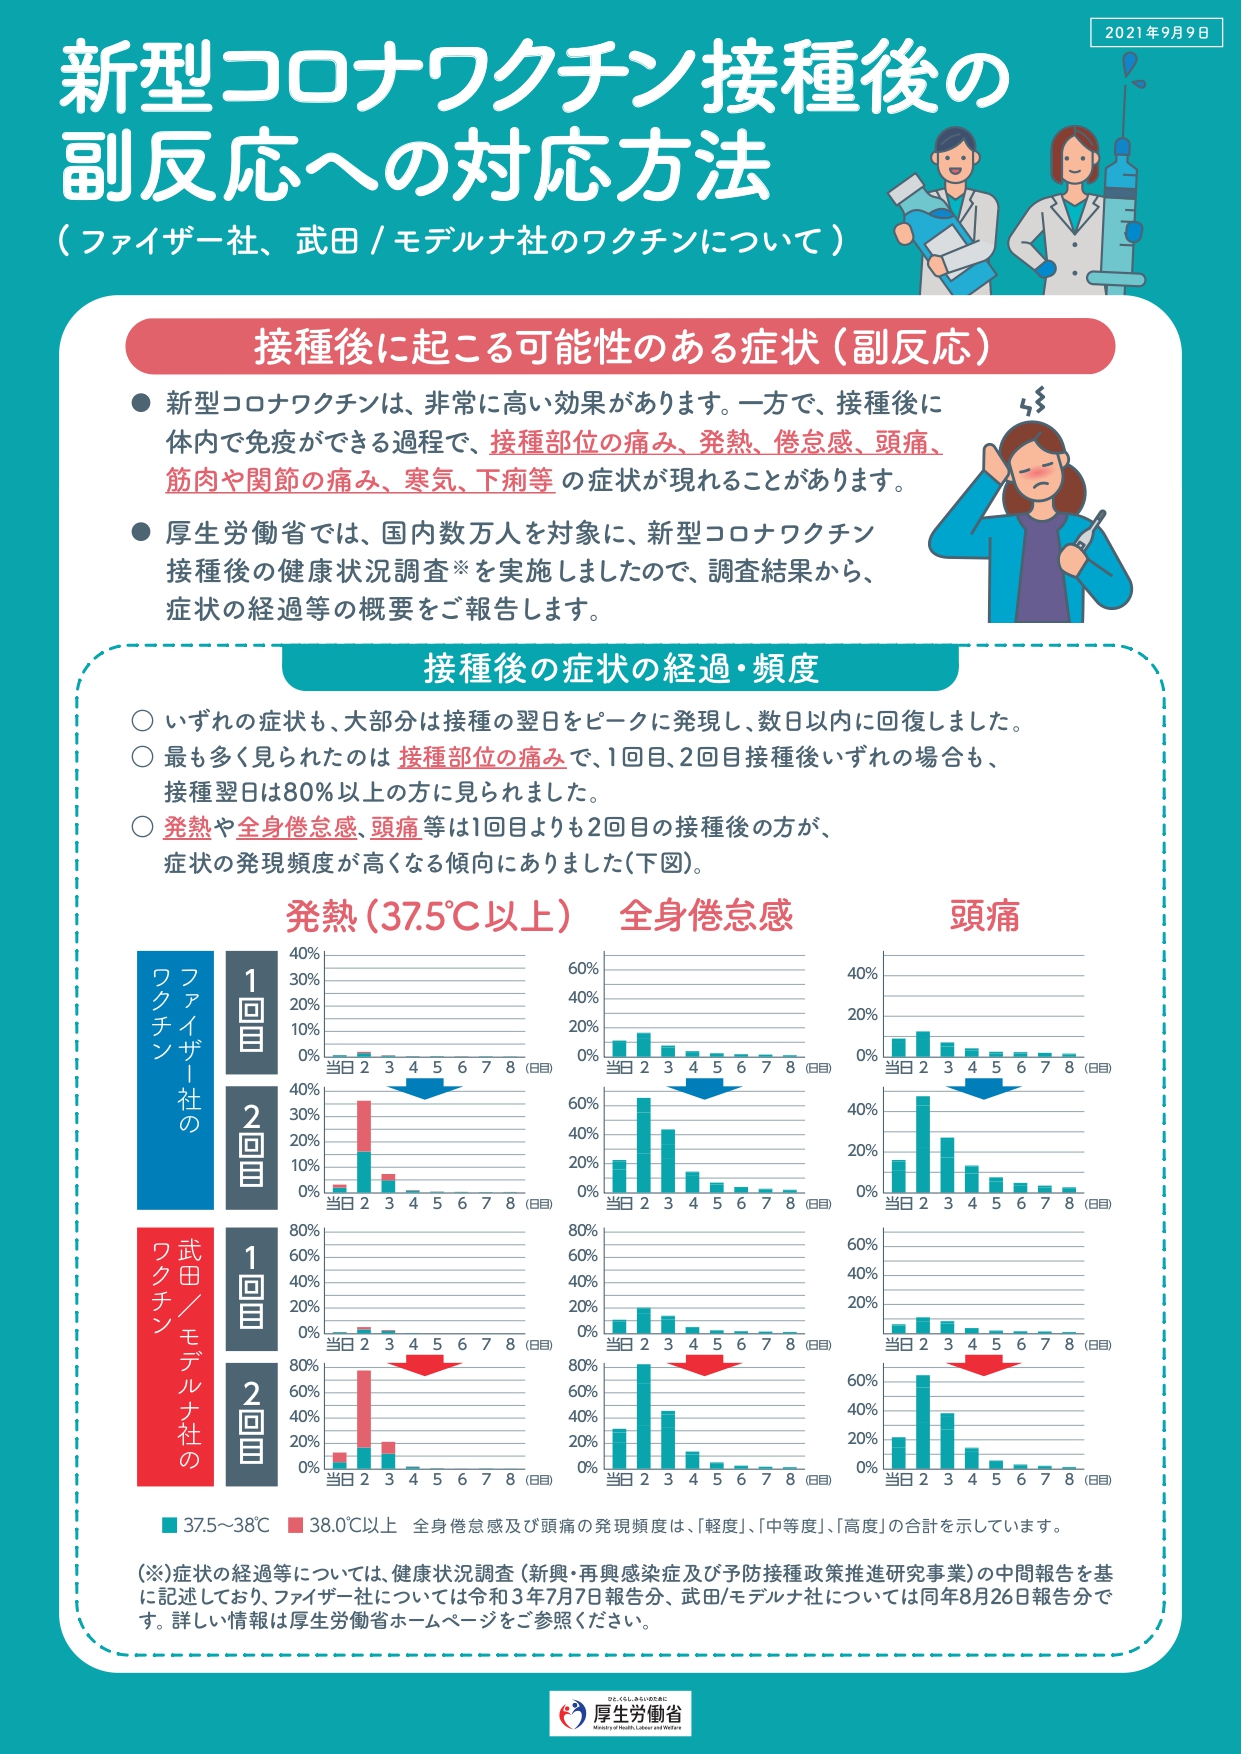 新型コロナワクチン接種後の副反応への対応方法（ファイザー社、武田／モデルナ社のワクチンについて）（2021年9月9日版）の画像